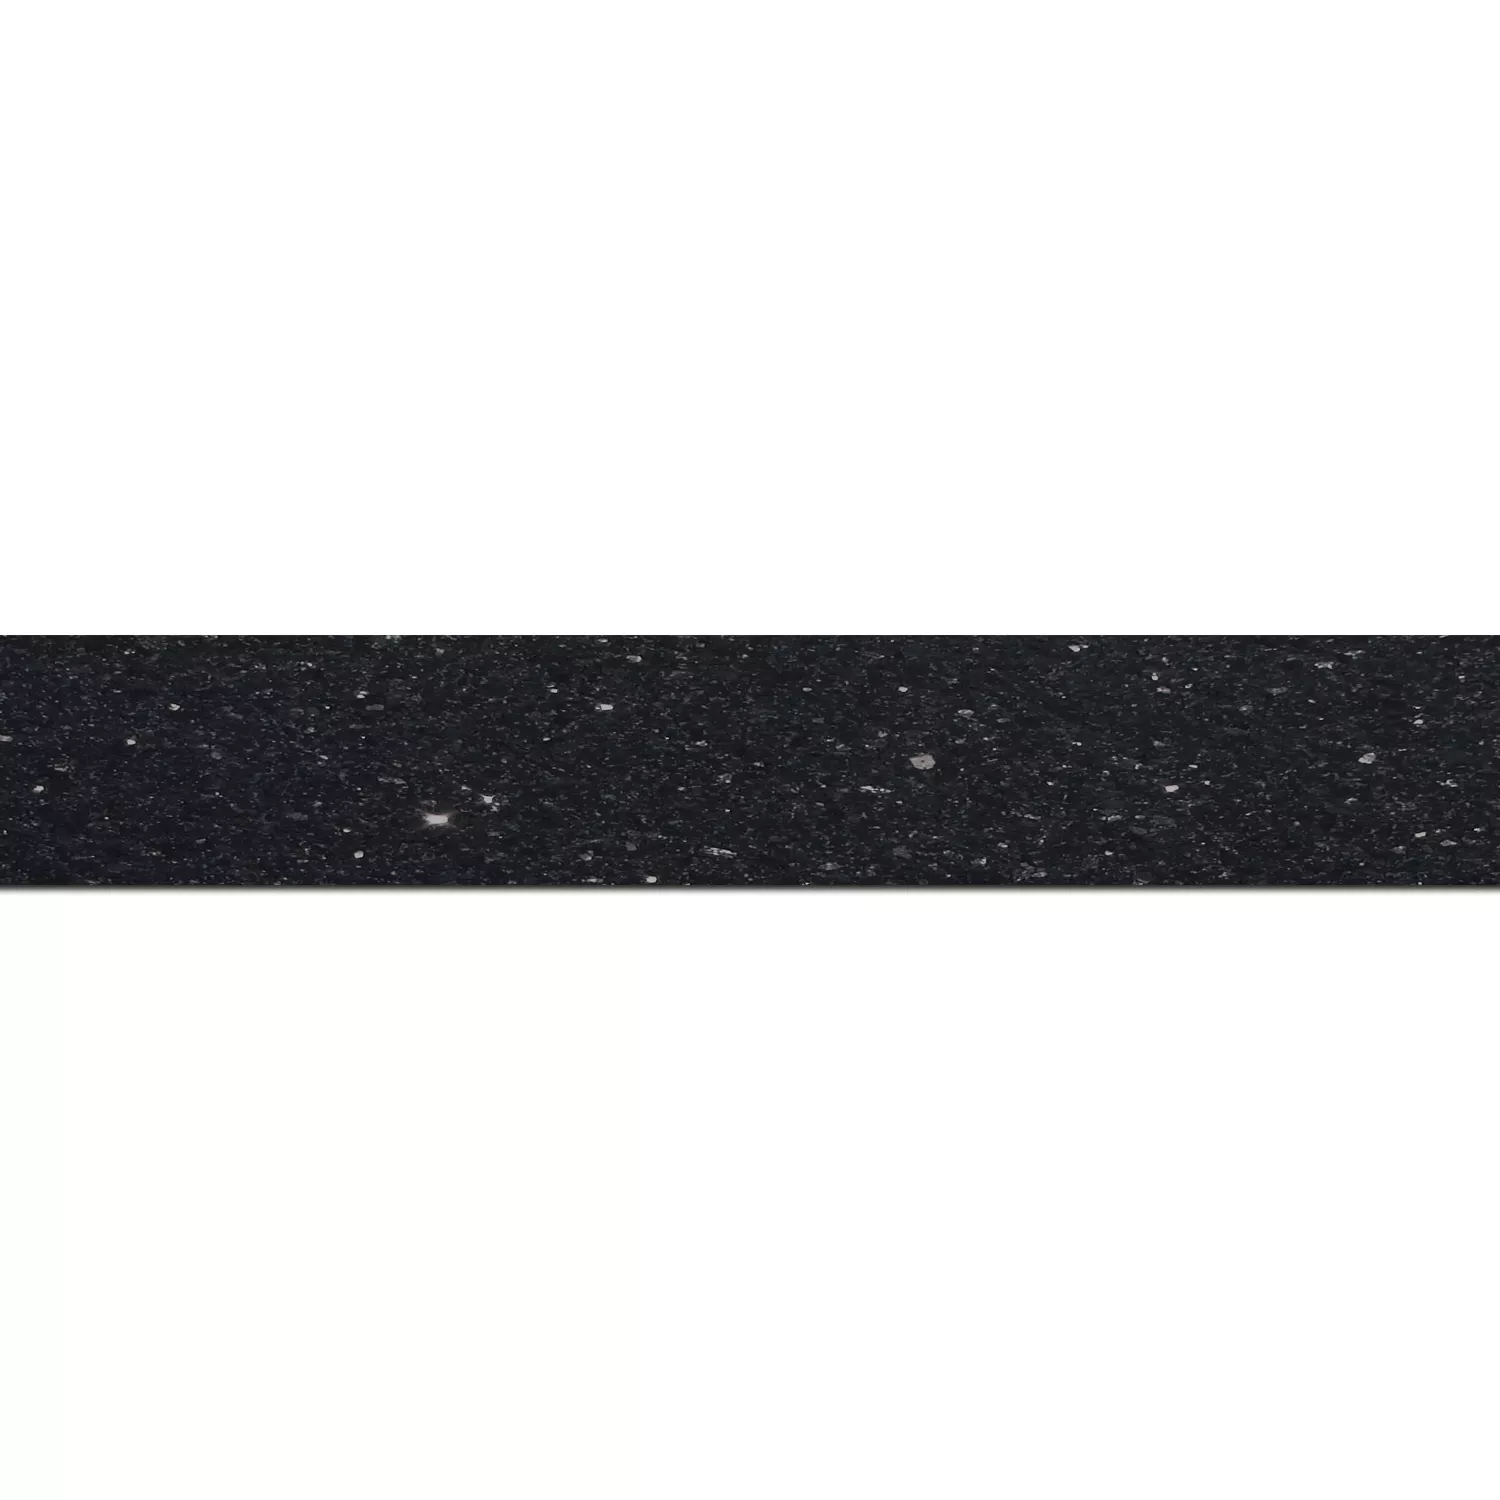 Placi De Piatra Naturala Granit Baza Star Galaxy